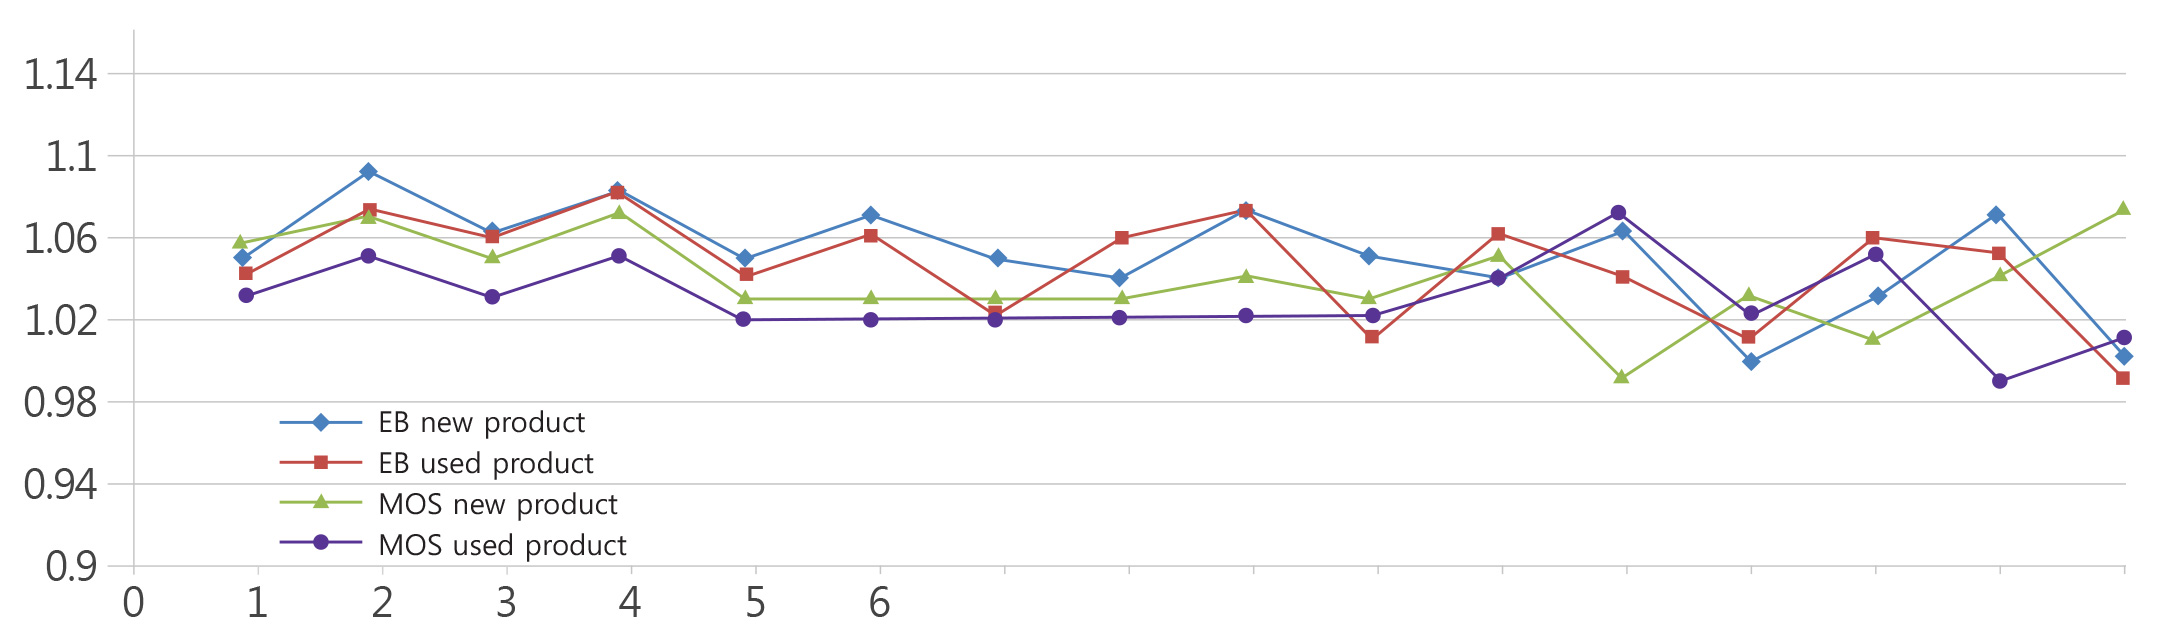 엠오에스 제품 1과 엠오에스 제품 2의 비교 그래프